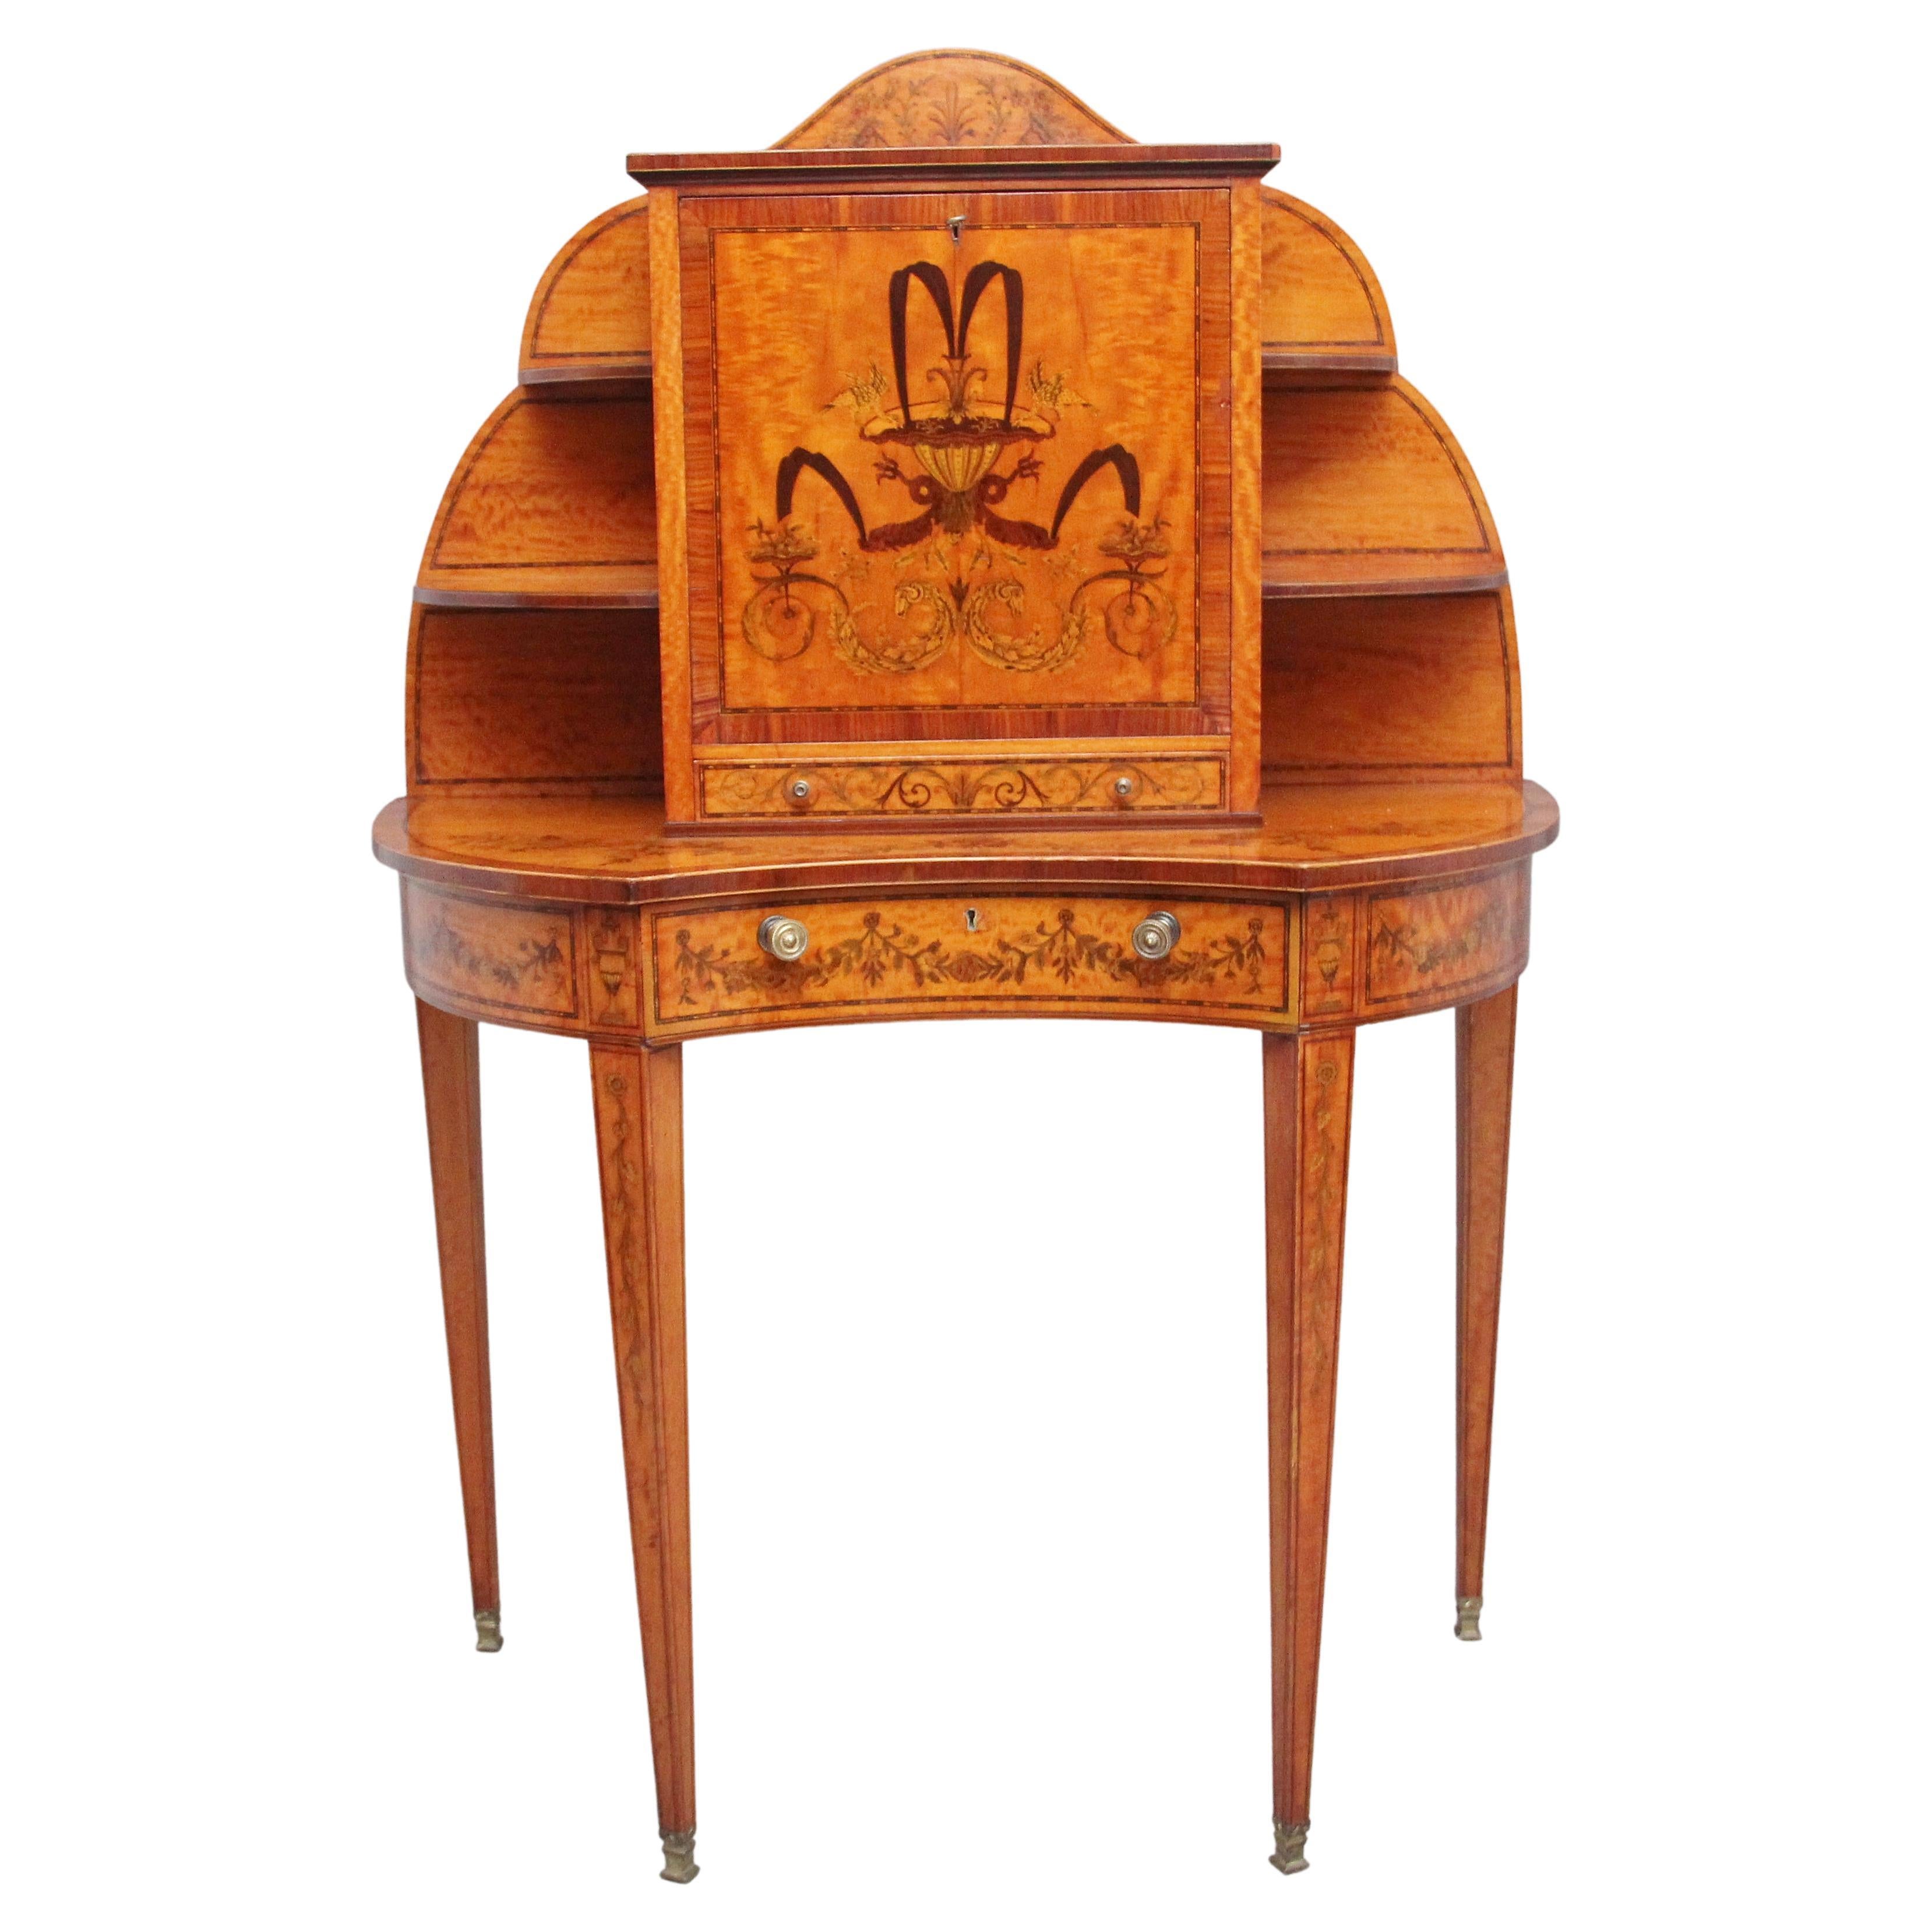 Schreibtisch aus Seidenholz im Sheraton-Revival-Stil des 19. Jahrhunderts